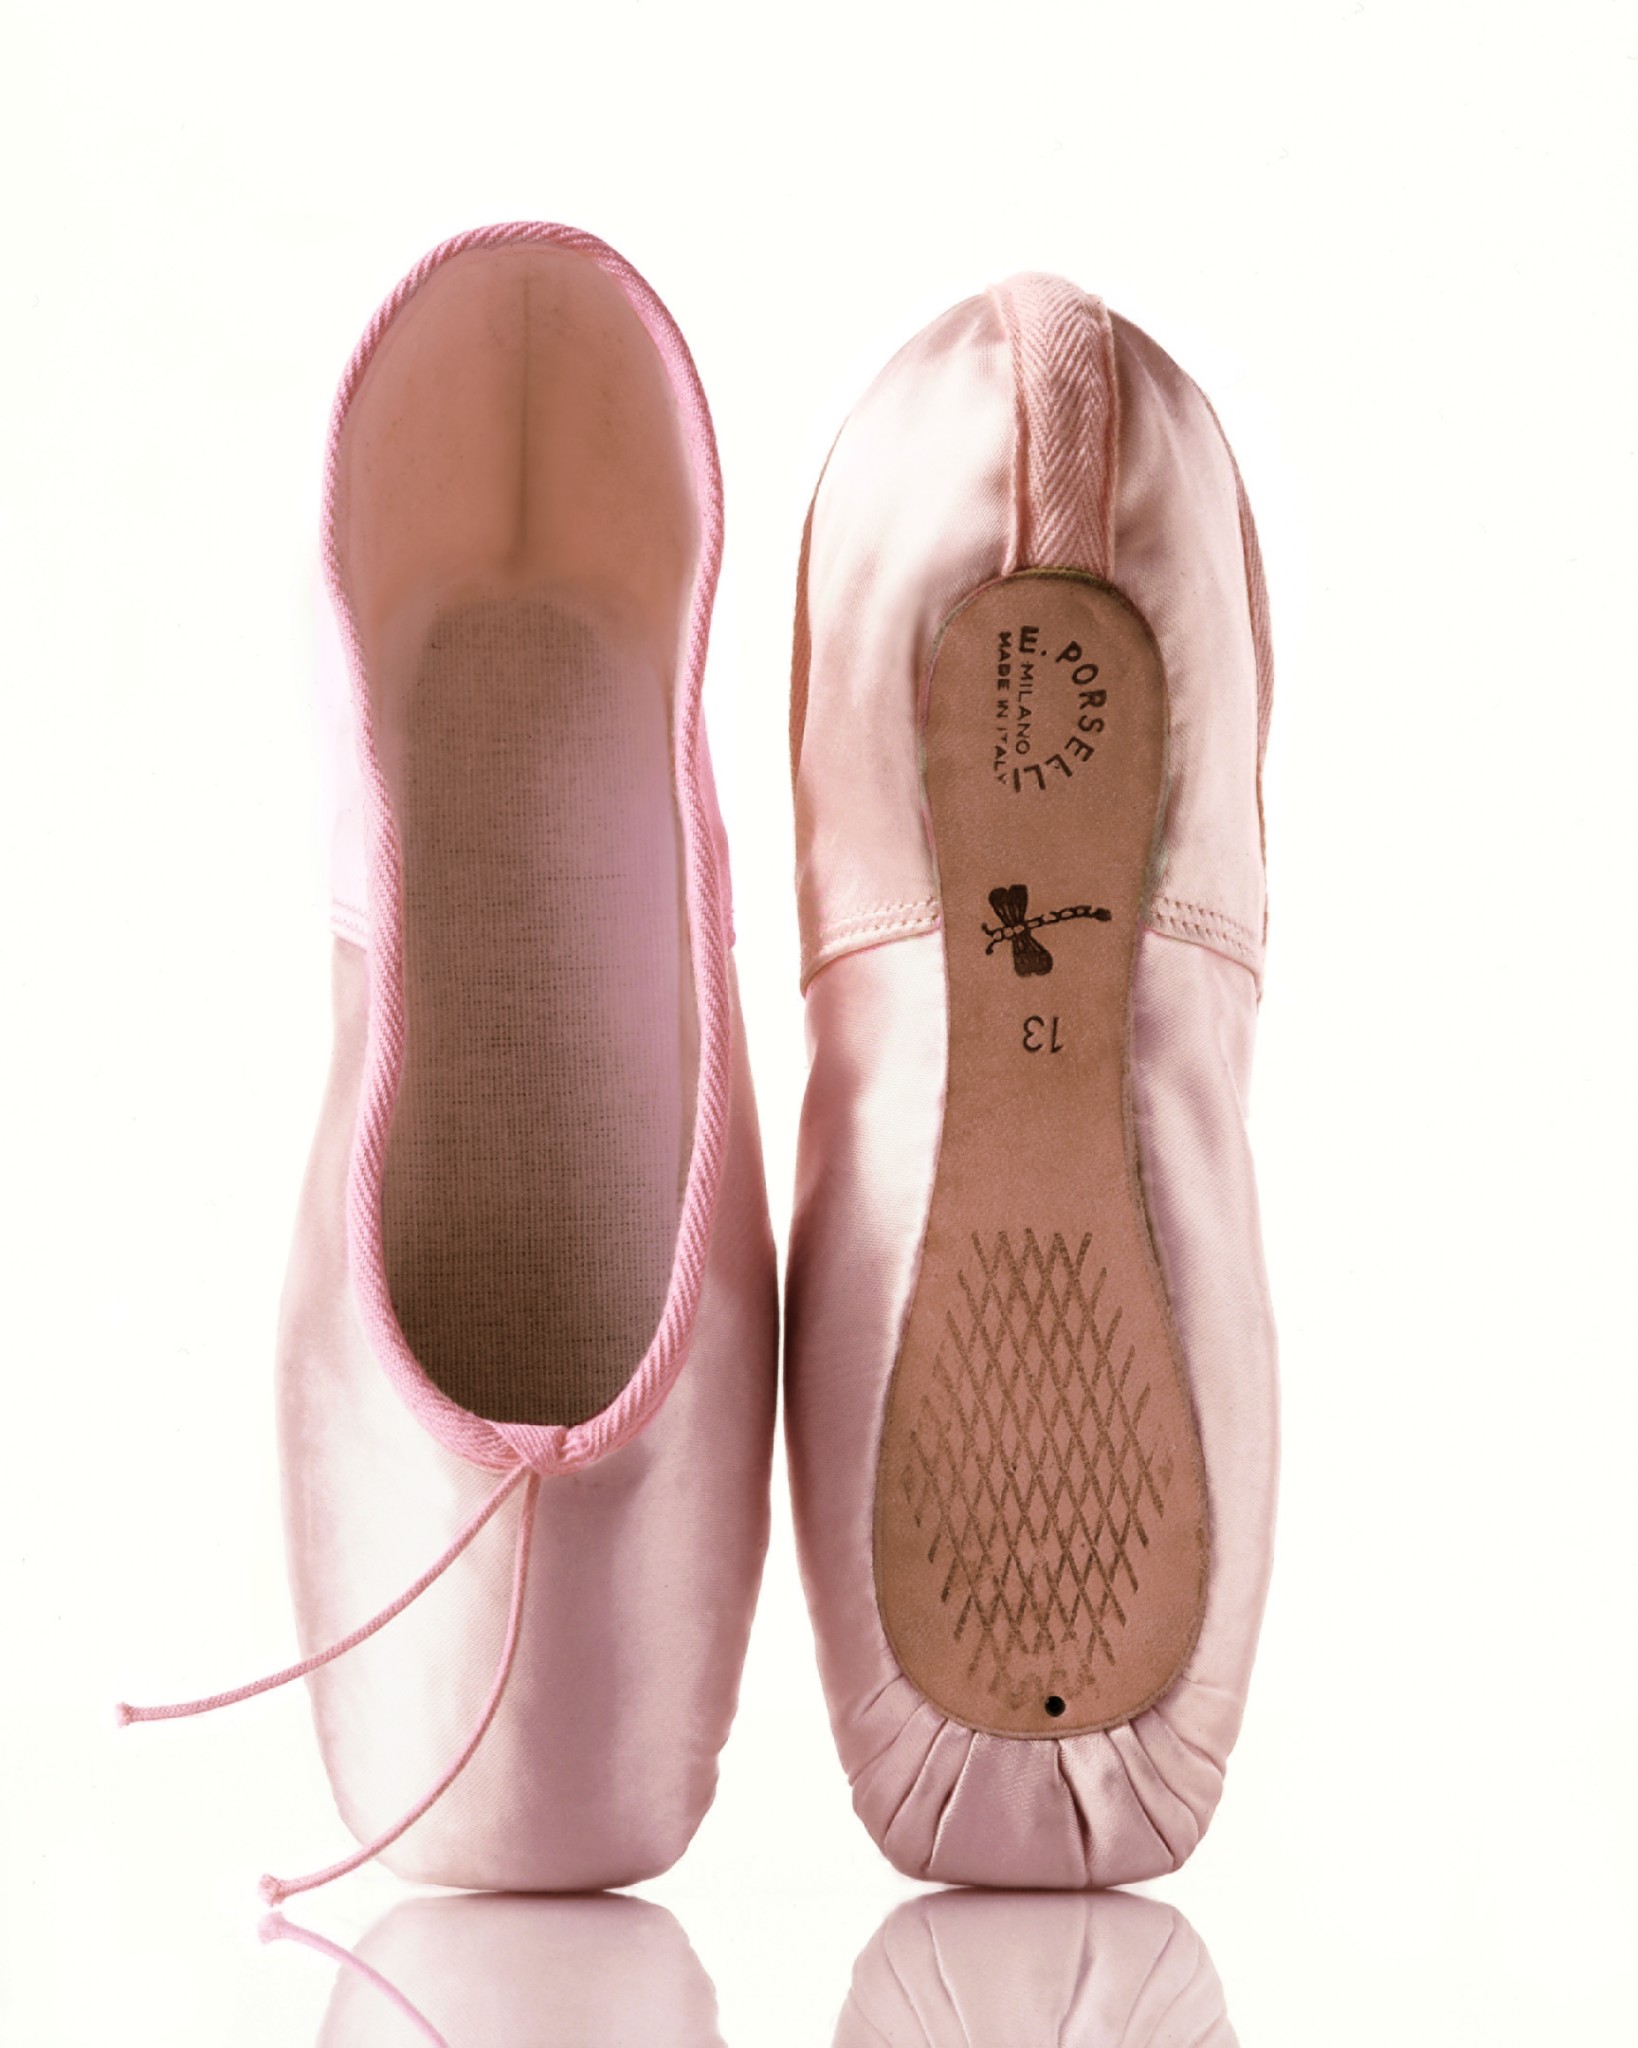 Pédilles FootUndeez™ Balletto Premium – Balletto Dance Shop